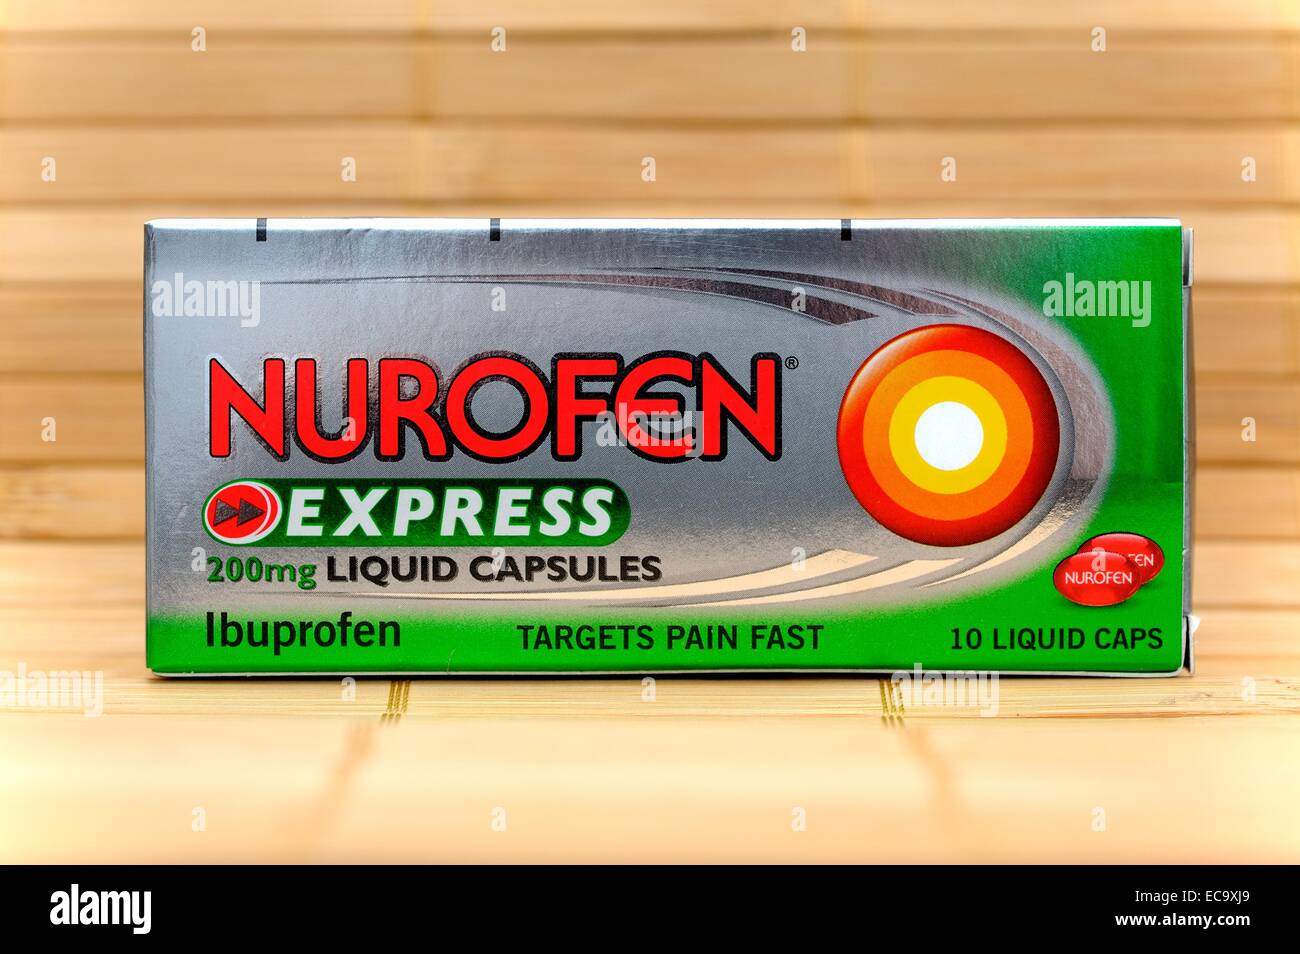 Nurofen Express liquid capsules Ibuprofen Stock Photo